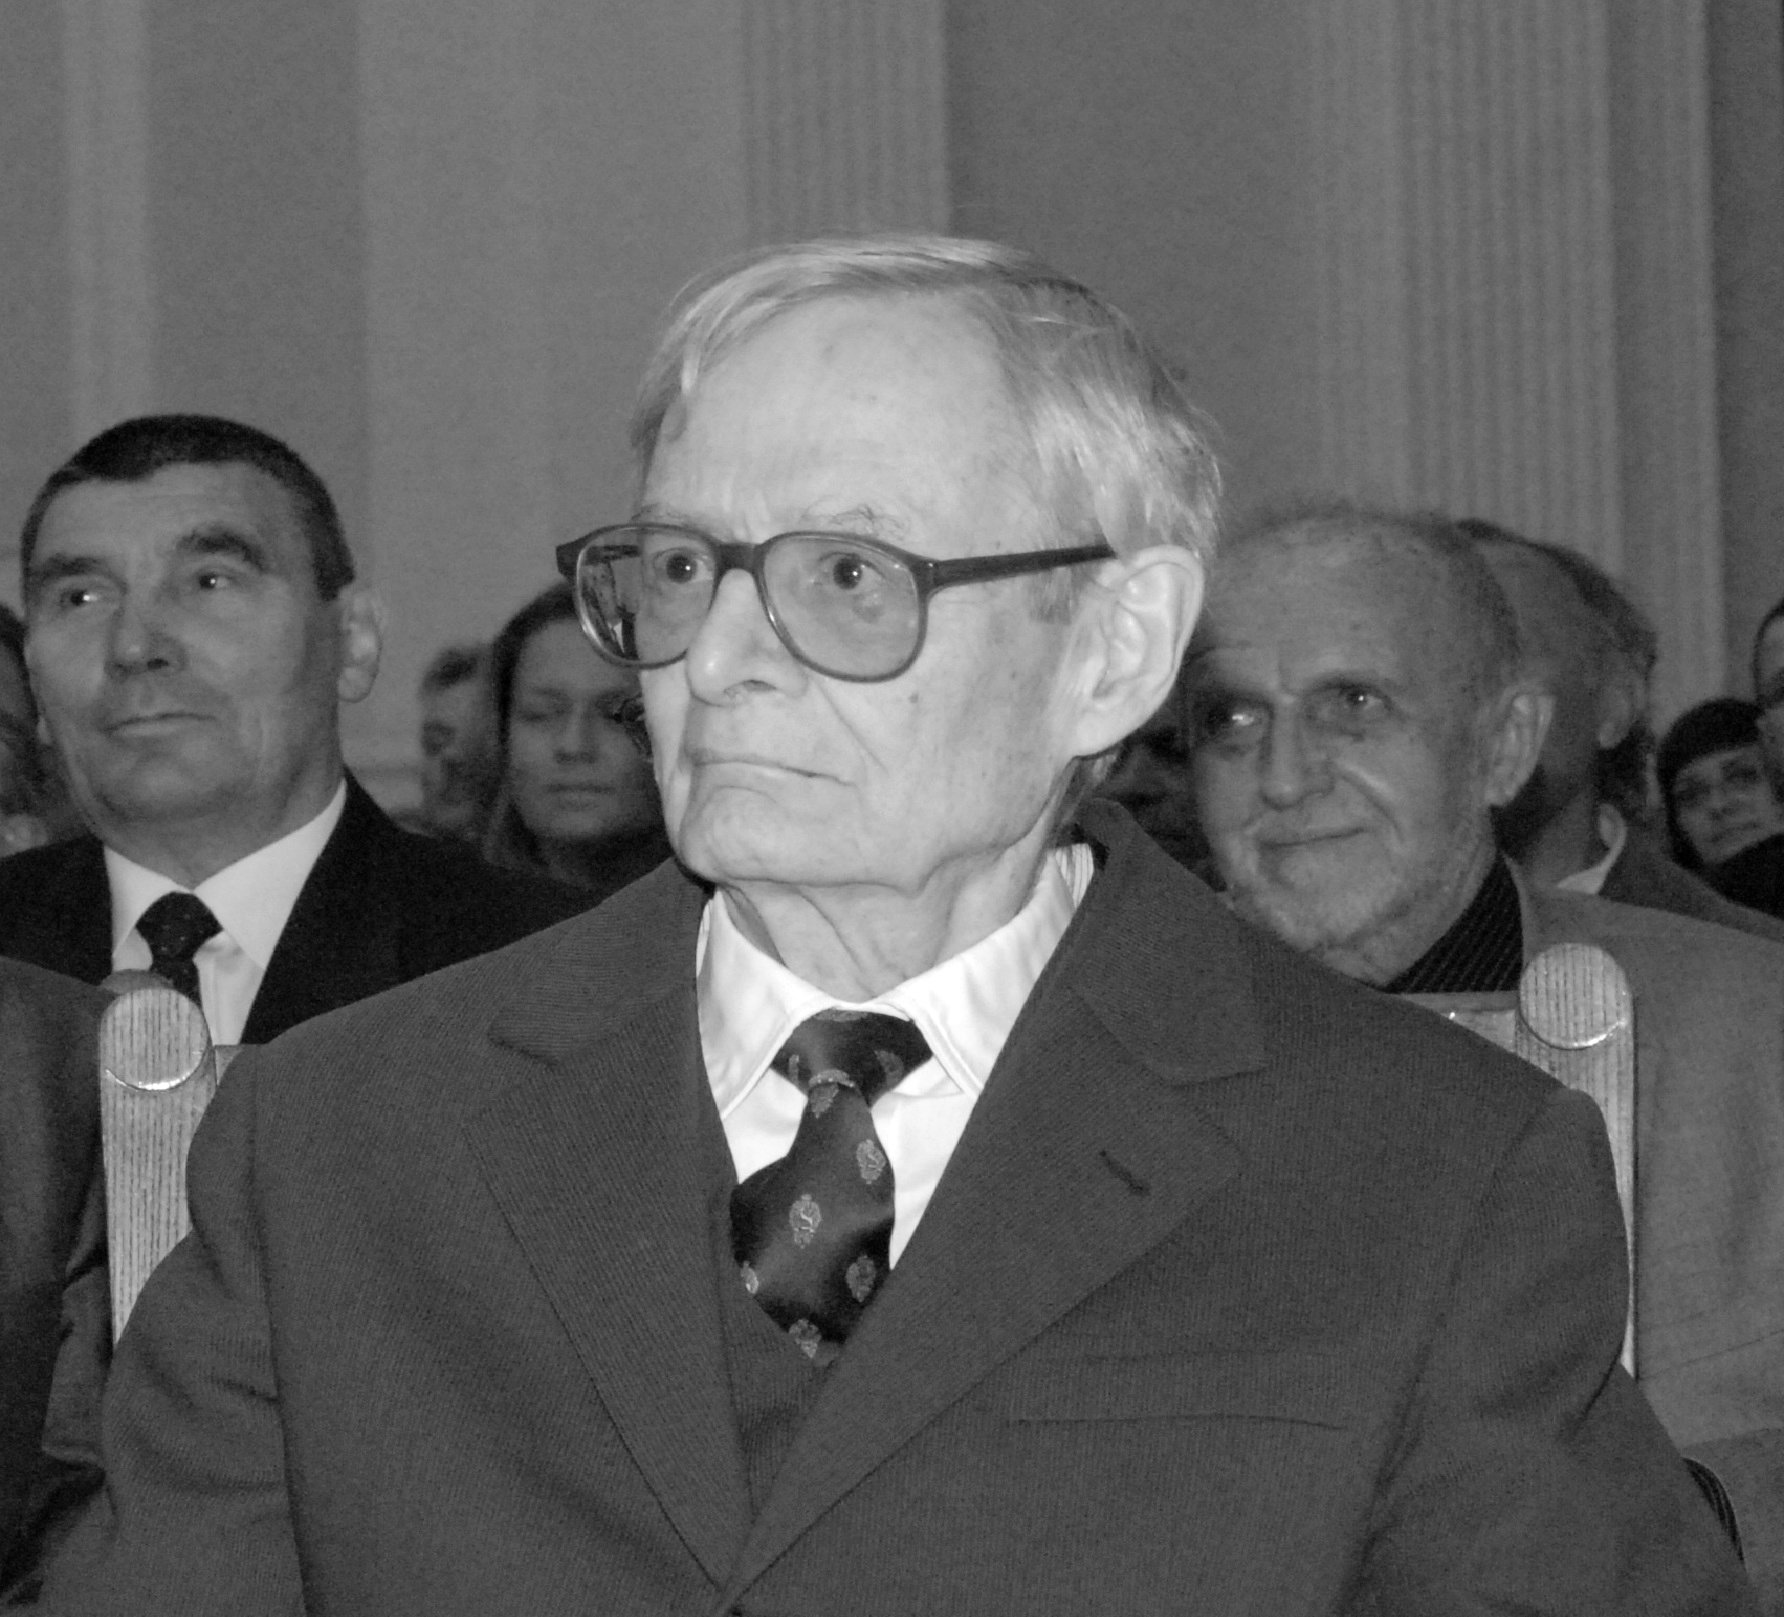 Starszy mężczyzna w garniturze i okularach w czerni i bieli